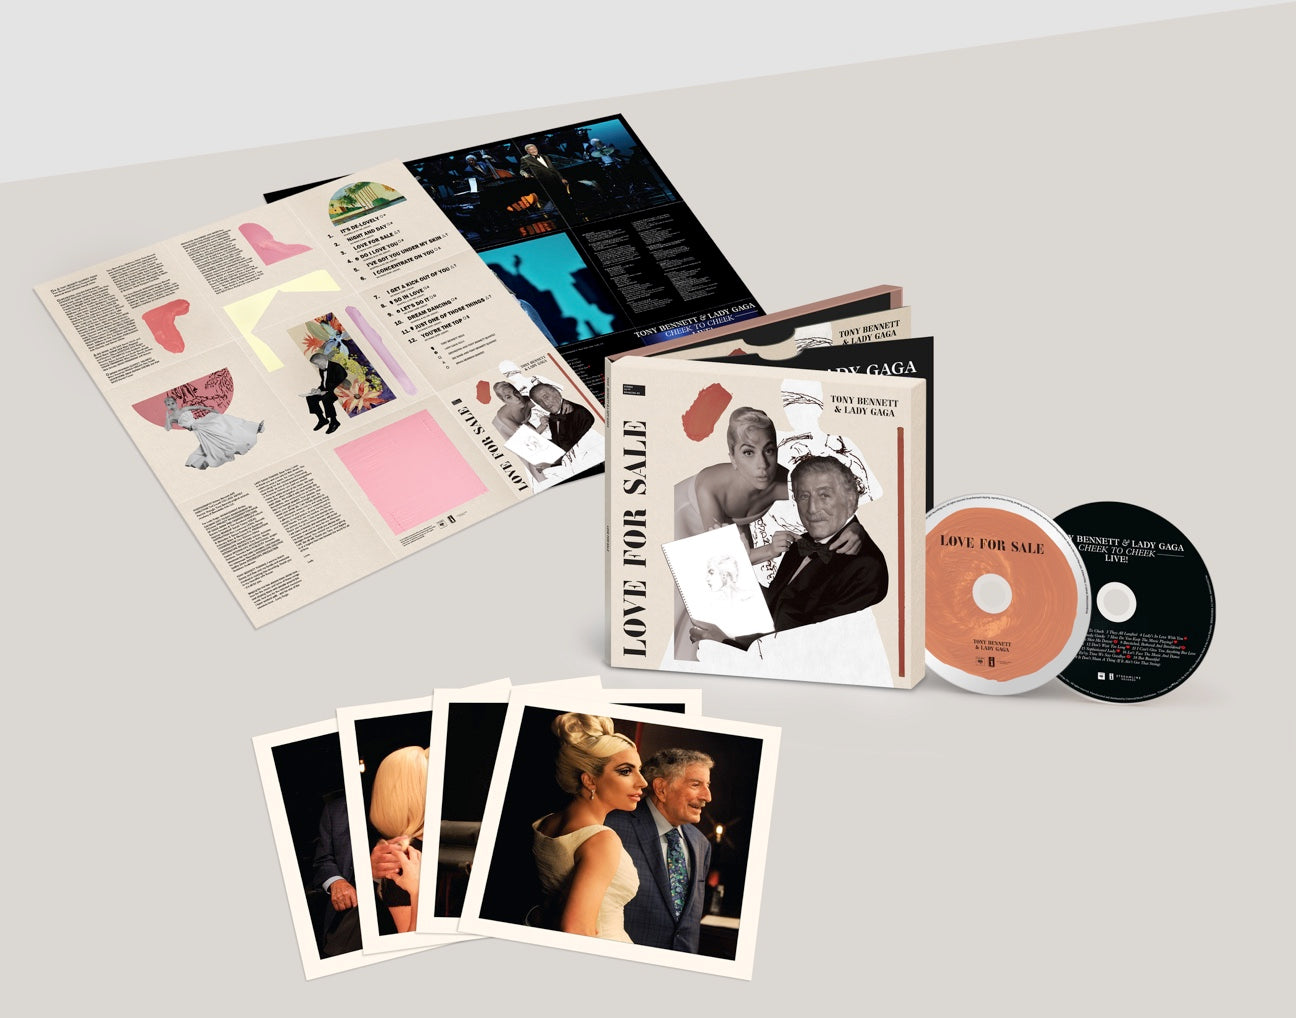 Tony Bennett, Lady Gaga - Love For Sale: International Deluxe 2CD